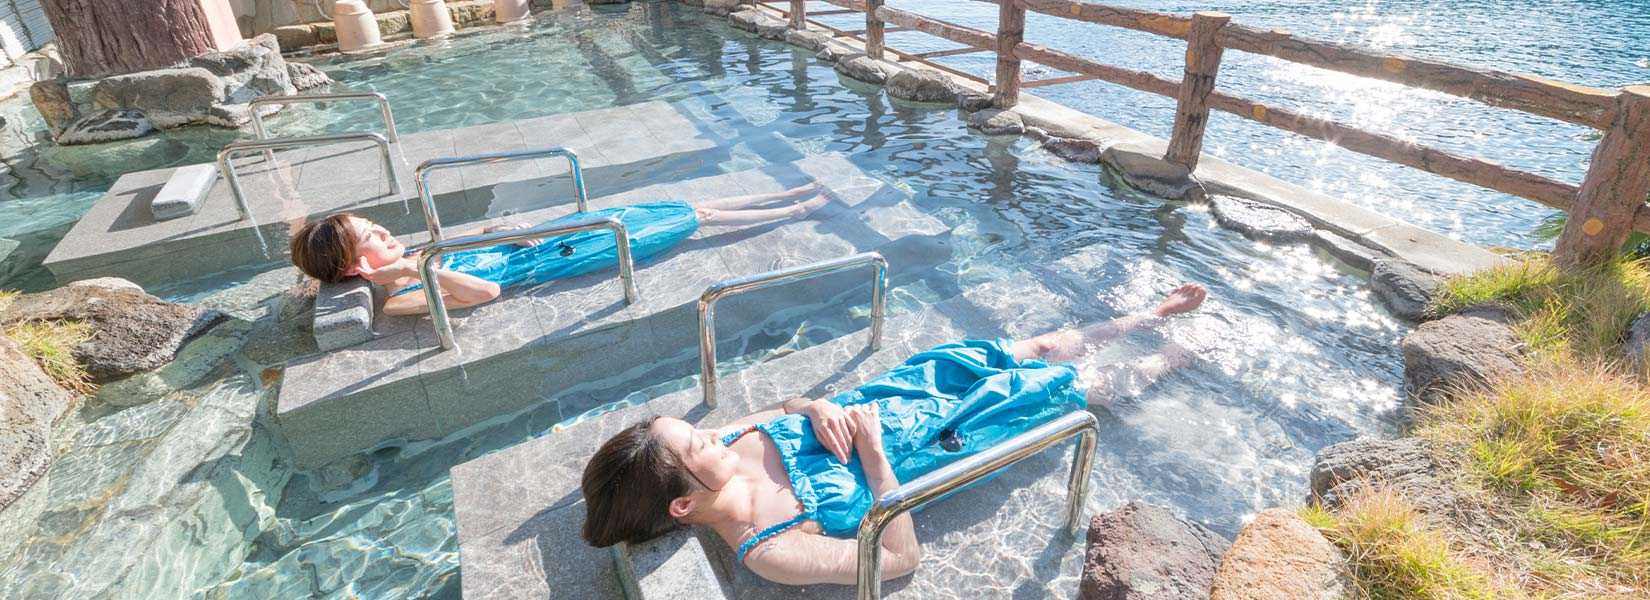 熊野別邸 中の島 露天⾵呂 紀州潮聞之湯 1位 温泉 泉質 絶景